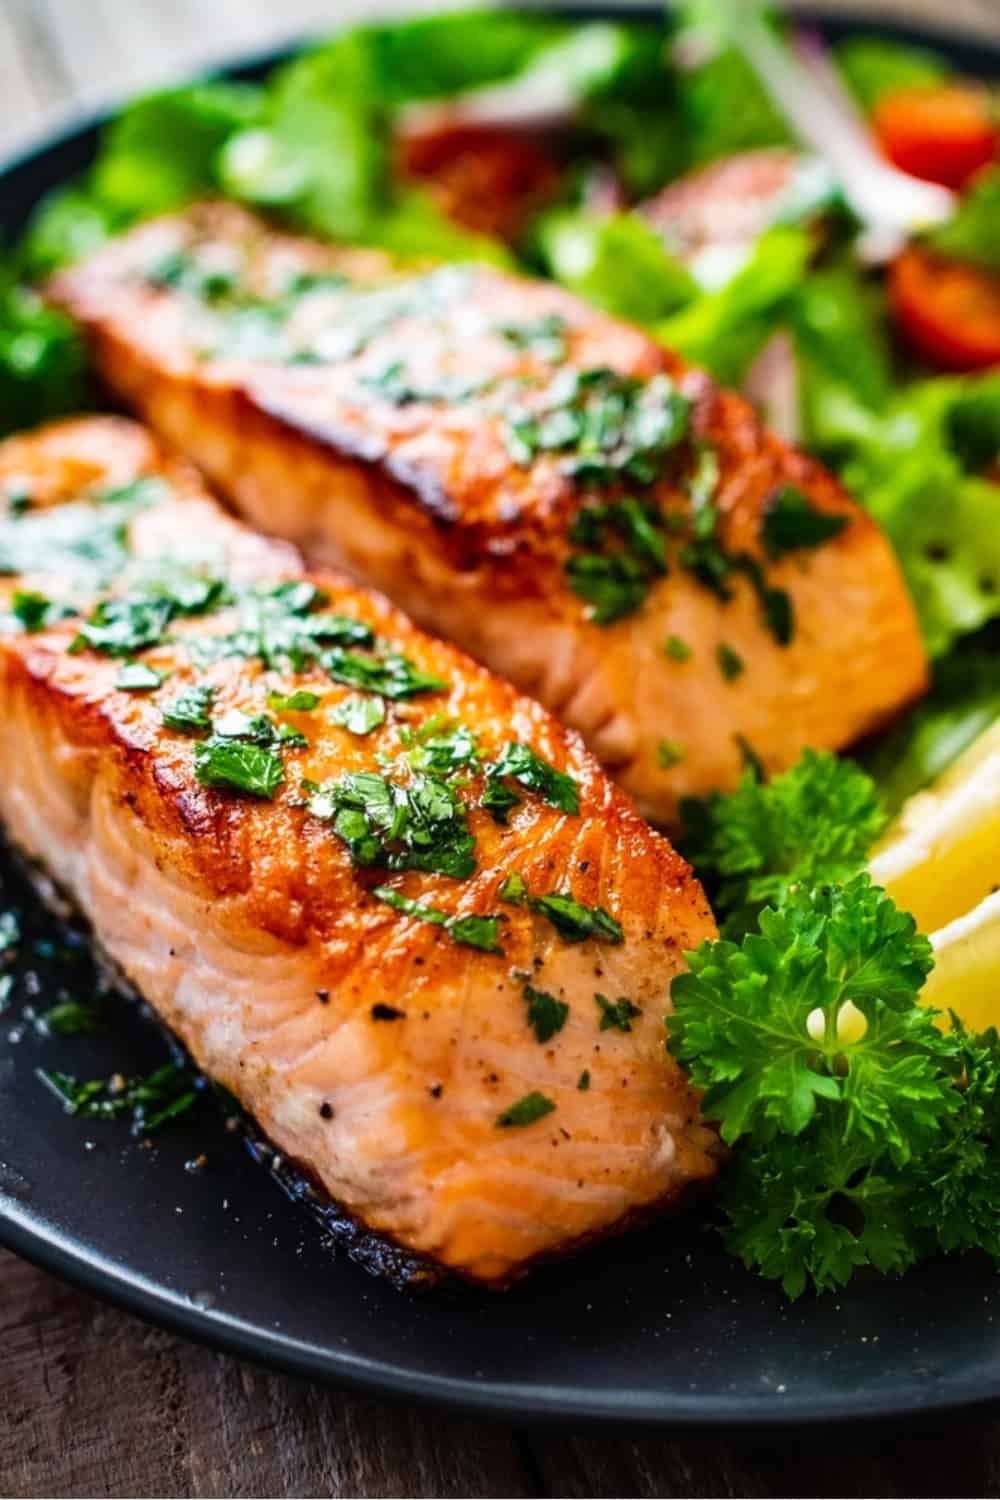 délicieux repas au saumon